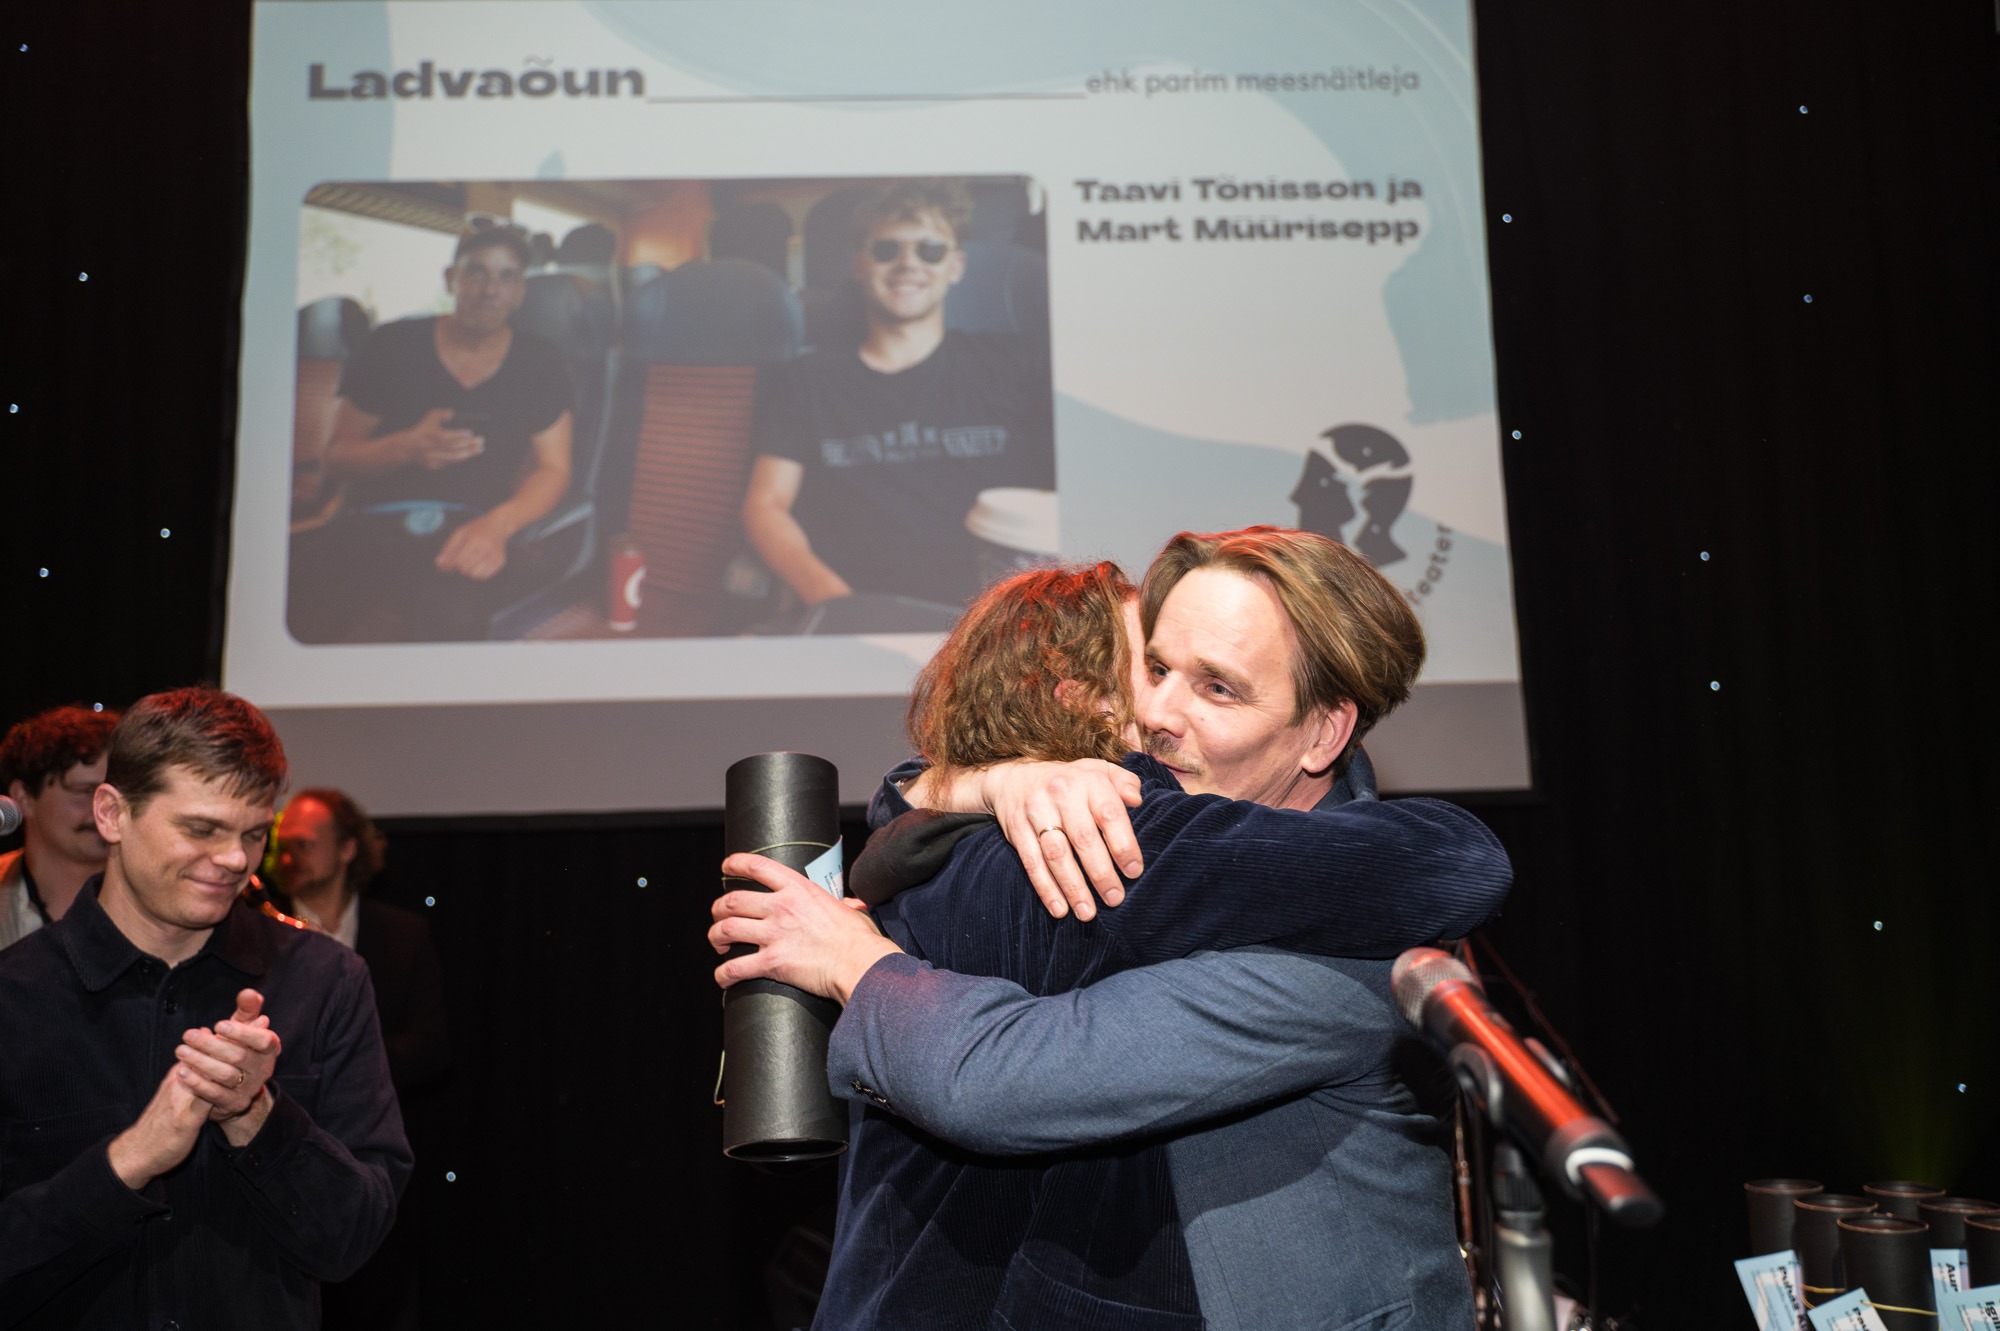 Pildi esiplaanil on Mart Müürisepp ja Taavi Tõnisson, kes kallistavad üksteist. Vasakul eemal seisab Mirko Rajas. Taustal paistab ekraan pildiga Müürisepast ja Tõnissonist.